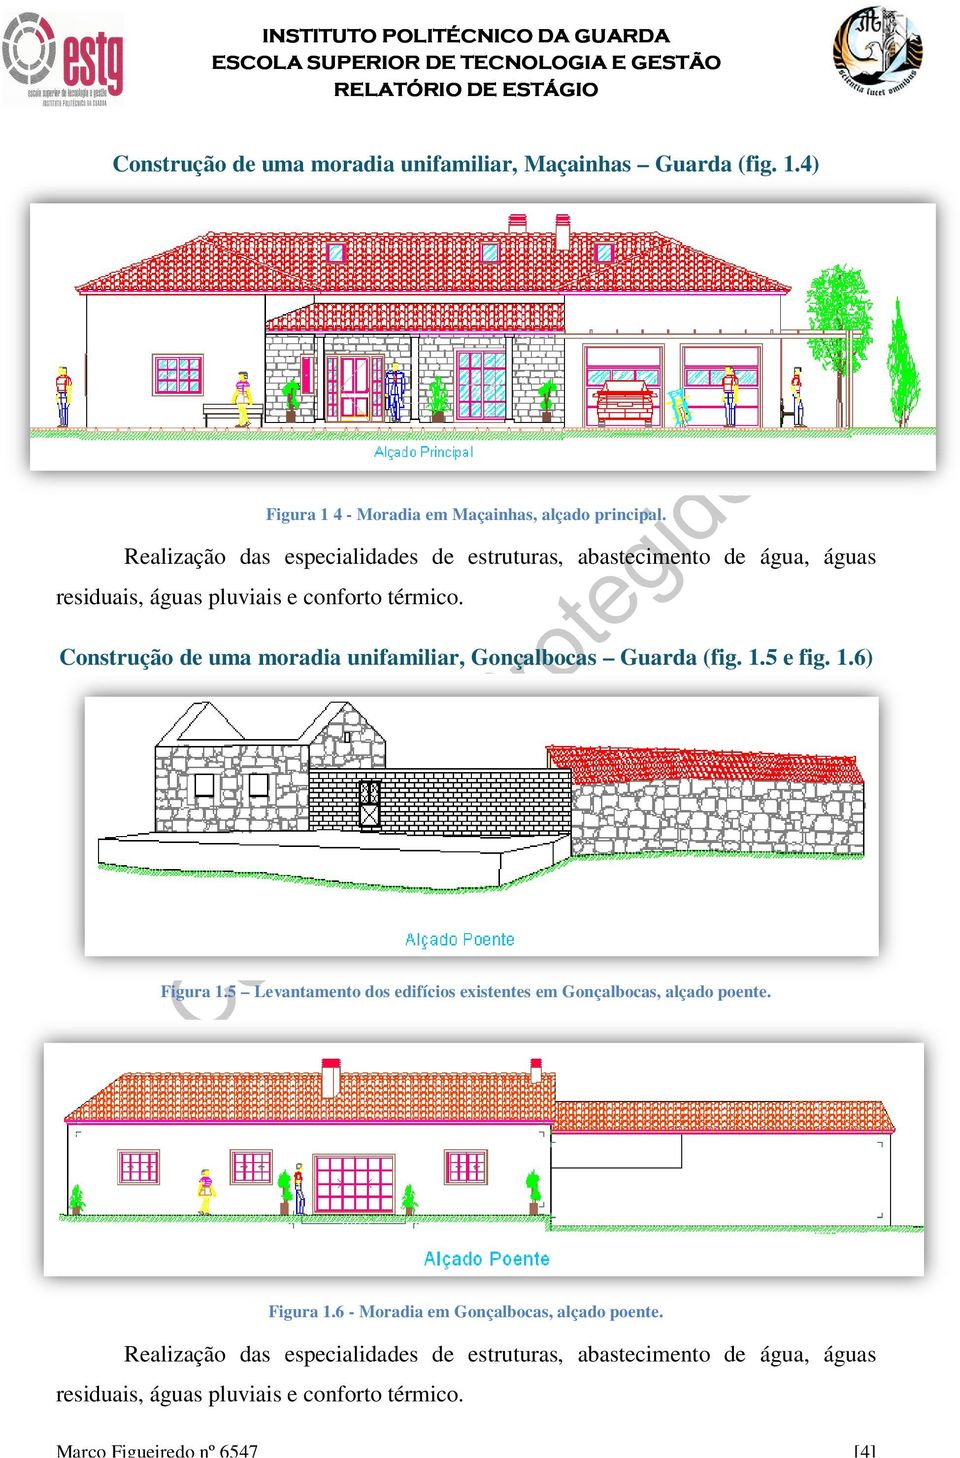 Construção de uma moradia unifamiliar, Gonçalbocas Guarda (fig. 1.5 e fig. 1.6) Figura 1.